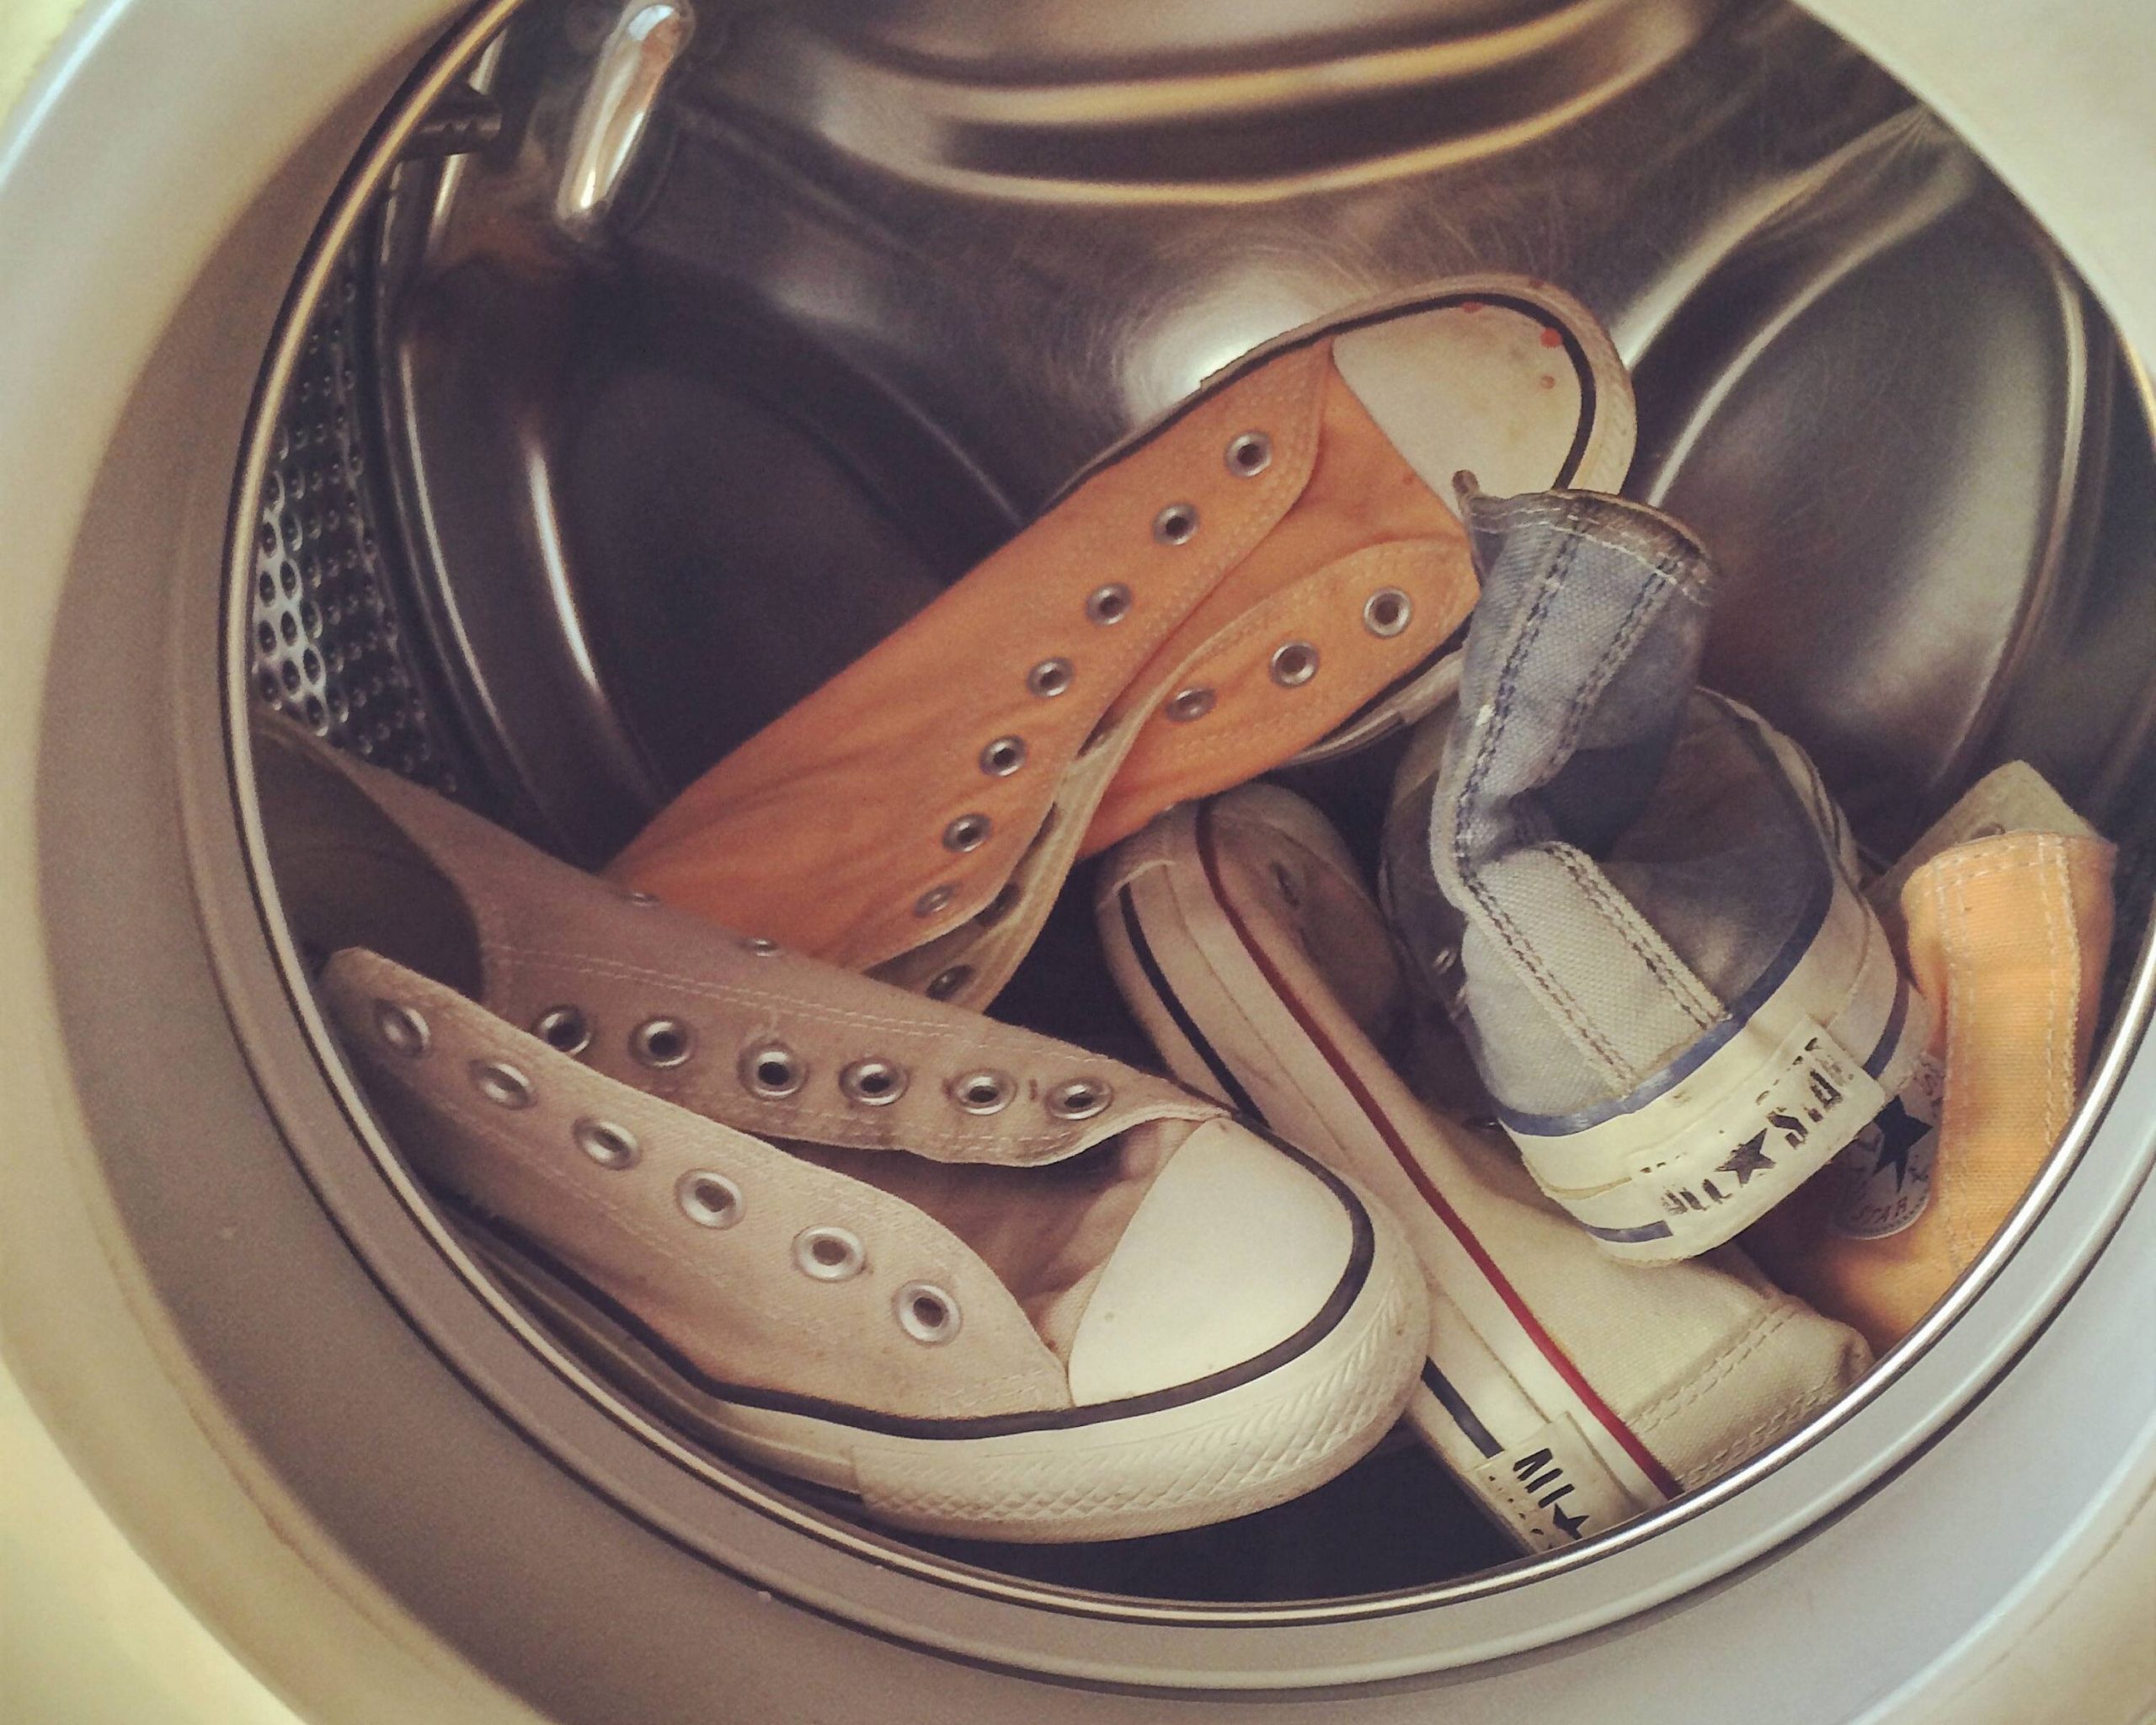 Thêm khăn vào khi giặt giày bằng máy giặt 